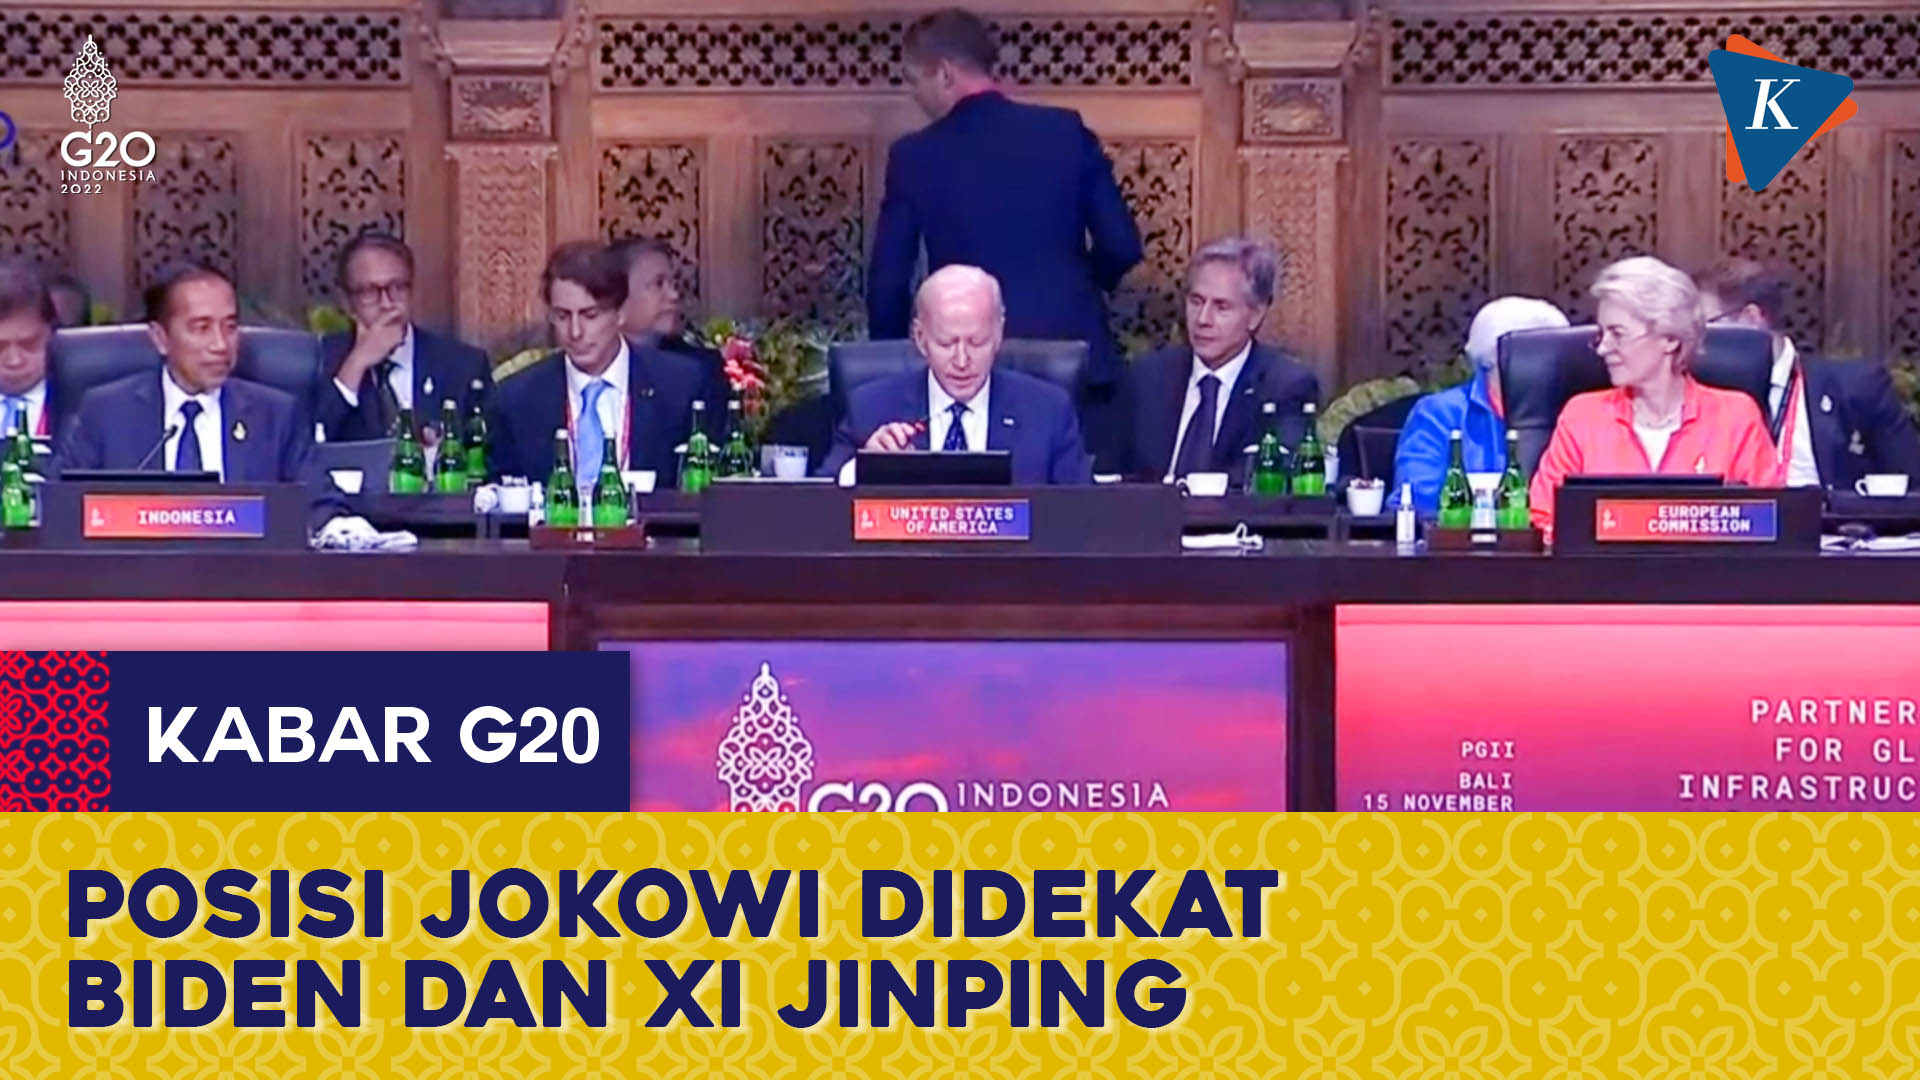 Jokowi, Biden dan Xi Jinping Duduk Berdekatan